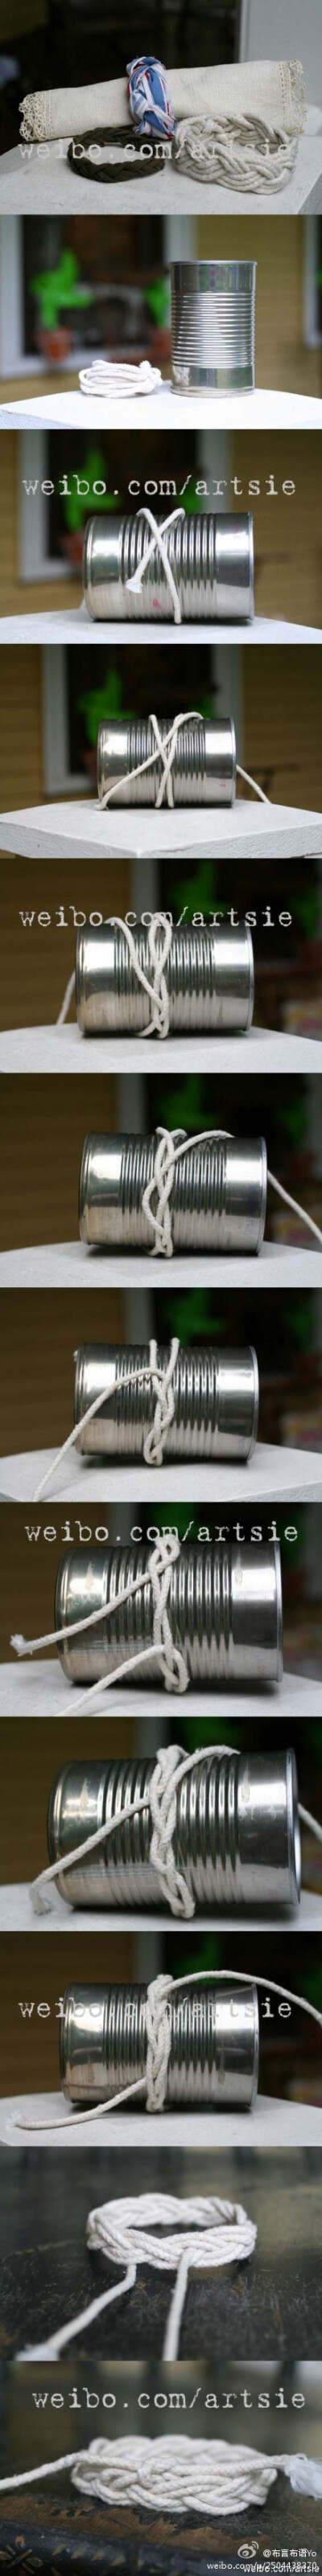 一个小铁桶和棉绳就可以自己编制手环